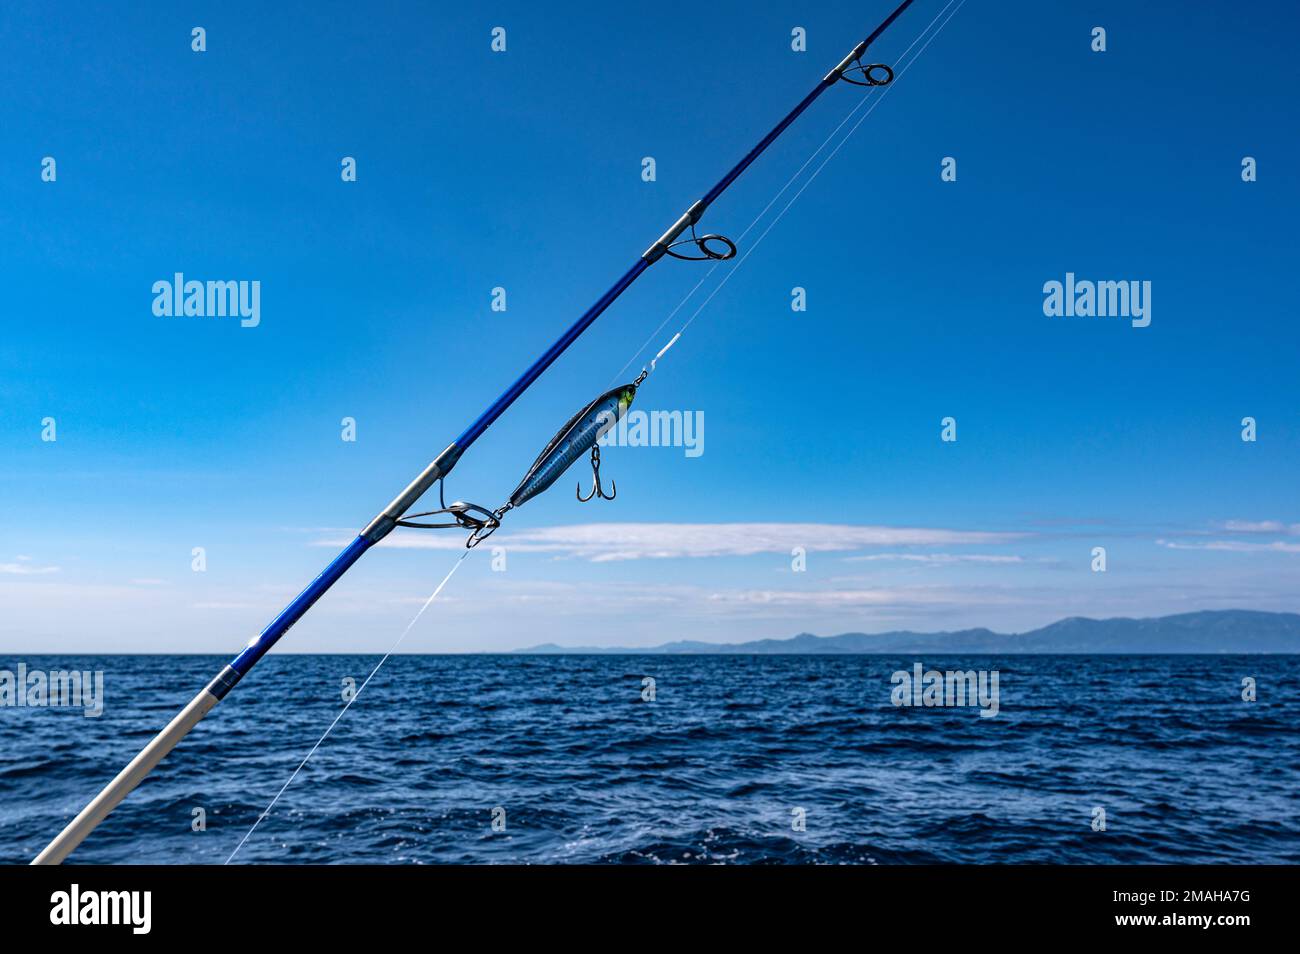 Canne à pêche avec crochet à poisson, avec vue sur les montagnes des Albères des Pyrénées, bordant la côte méditerranéenne, Banque D'Images